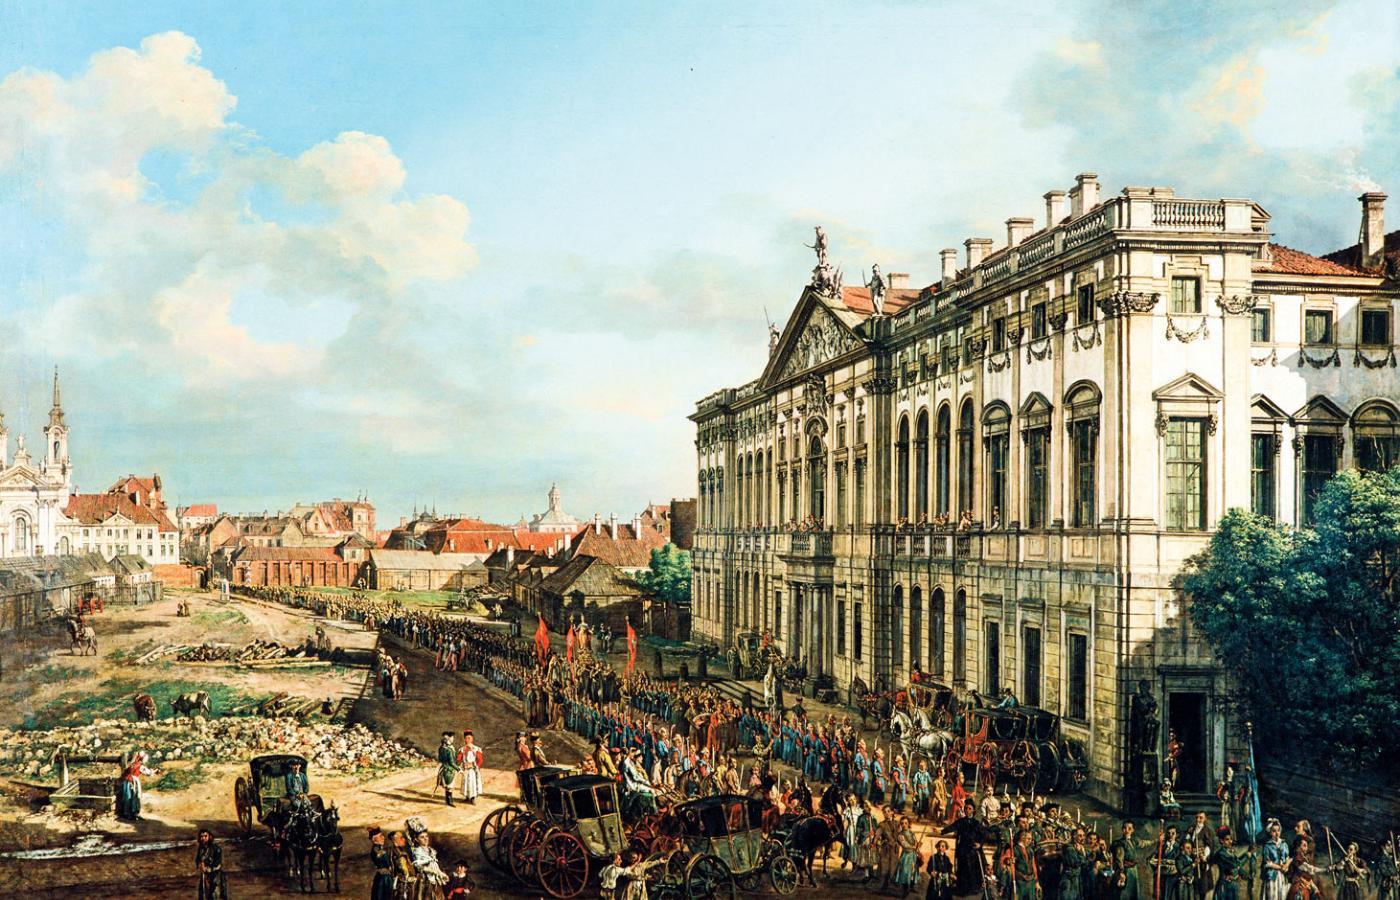 Pałac Rzeczpospolitej (Krasińskich) na obrazie Canaletta z 1778 r.